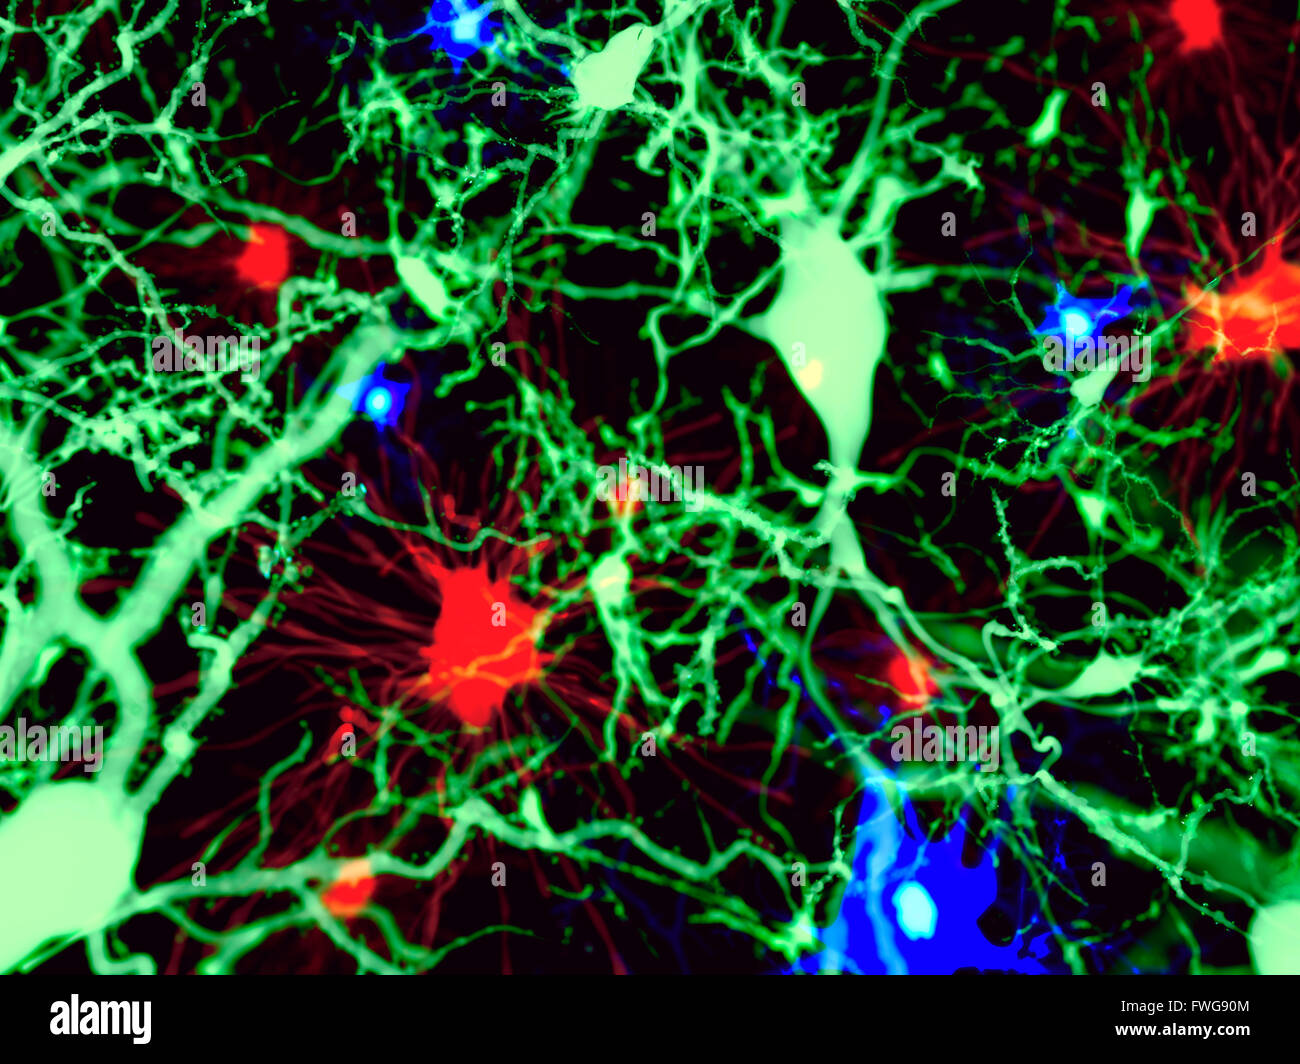 Gehirnzellen Illustration der drei Arten von Gehirnzellen: Astrozyten (rot) pyramidale Neuronen (grün) und Mikroglia-Zellen (blau) Stockfoto